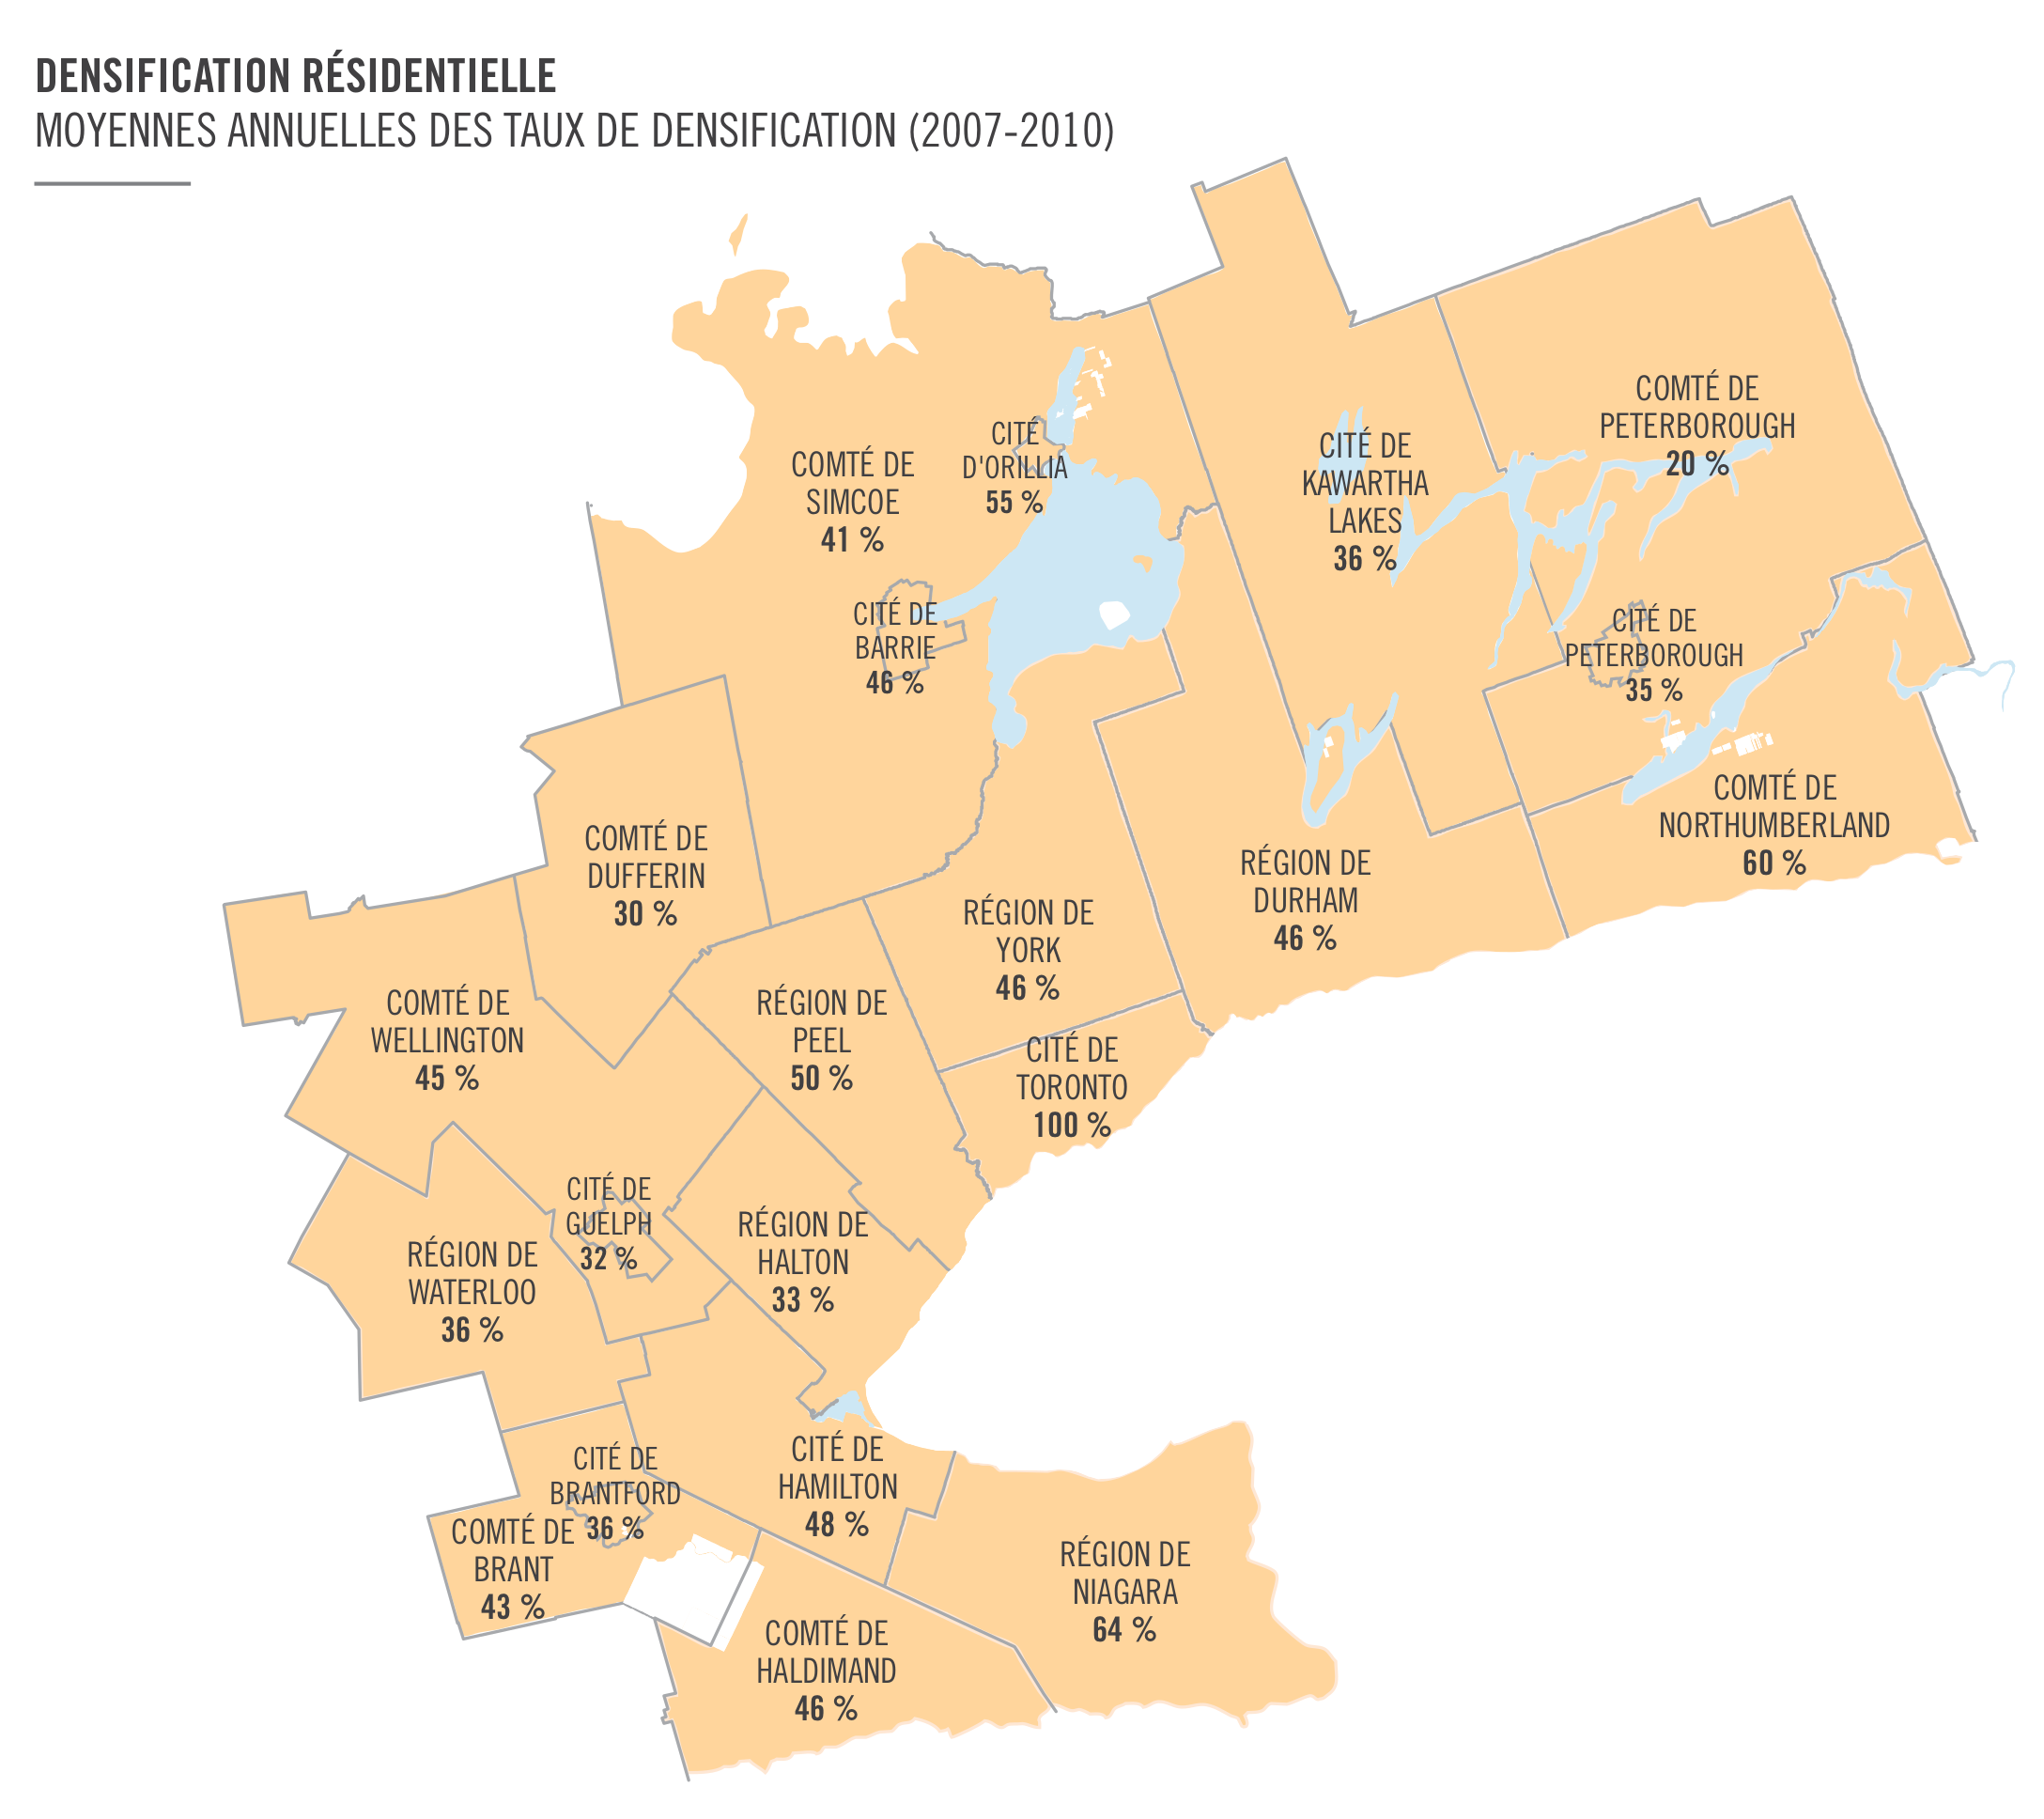 Densification Résidentielle : Moyennes annuelles des taux de densification (2007-2010) (carte)